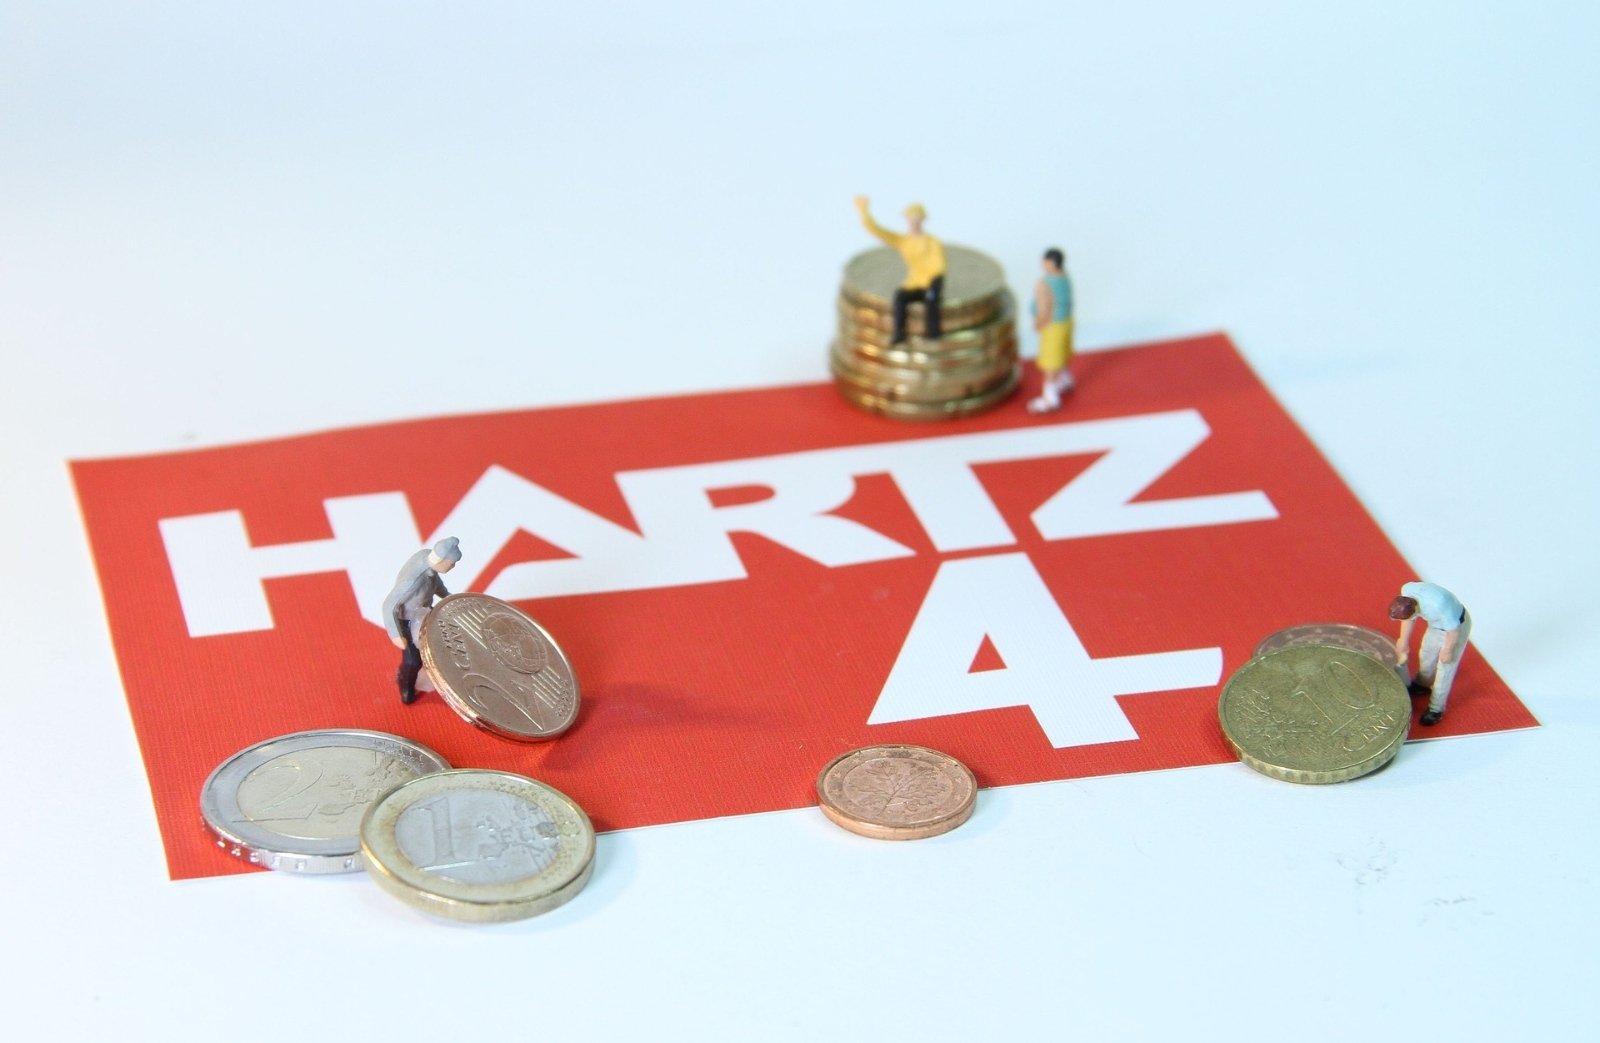 Hartz-IV-Frust trotz Arbeit: Viele Menschen weiter auf staatliche Hilfe angewiesen (c) www.pixabay.com